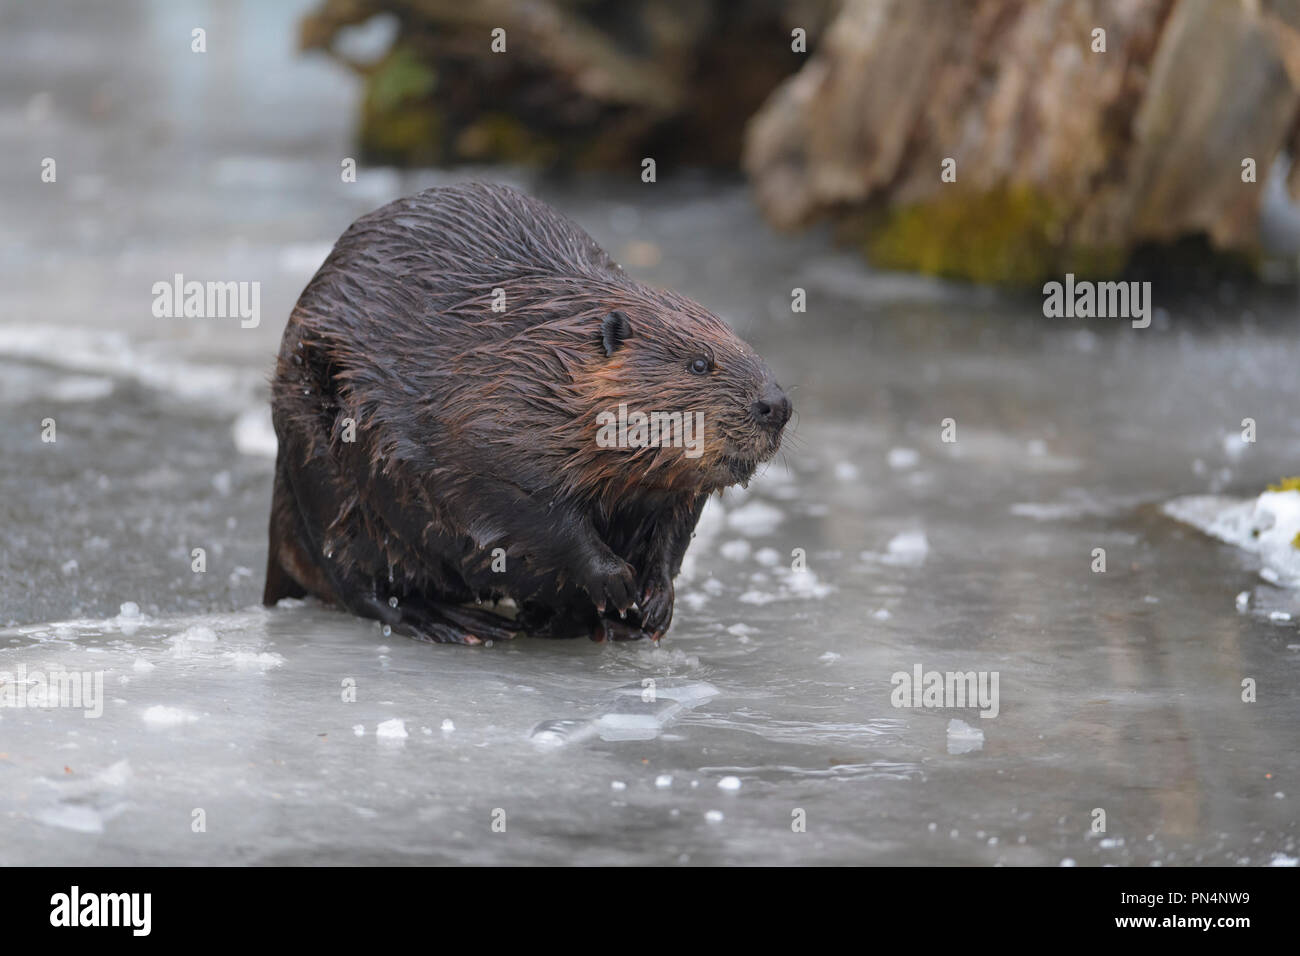 Beaver, European beaver, Castor fiber, in winter, Germany Stock Photo